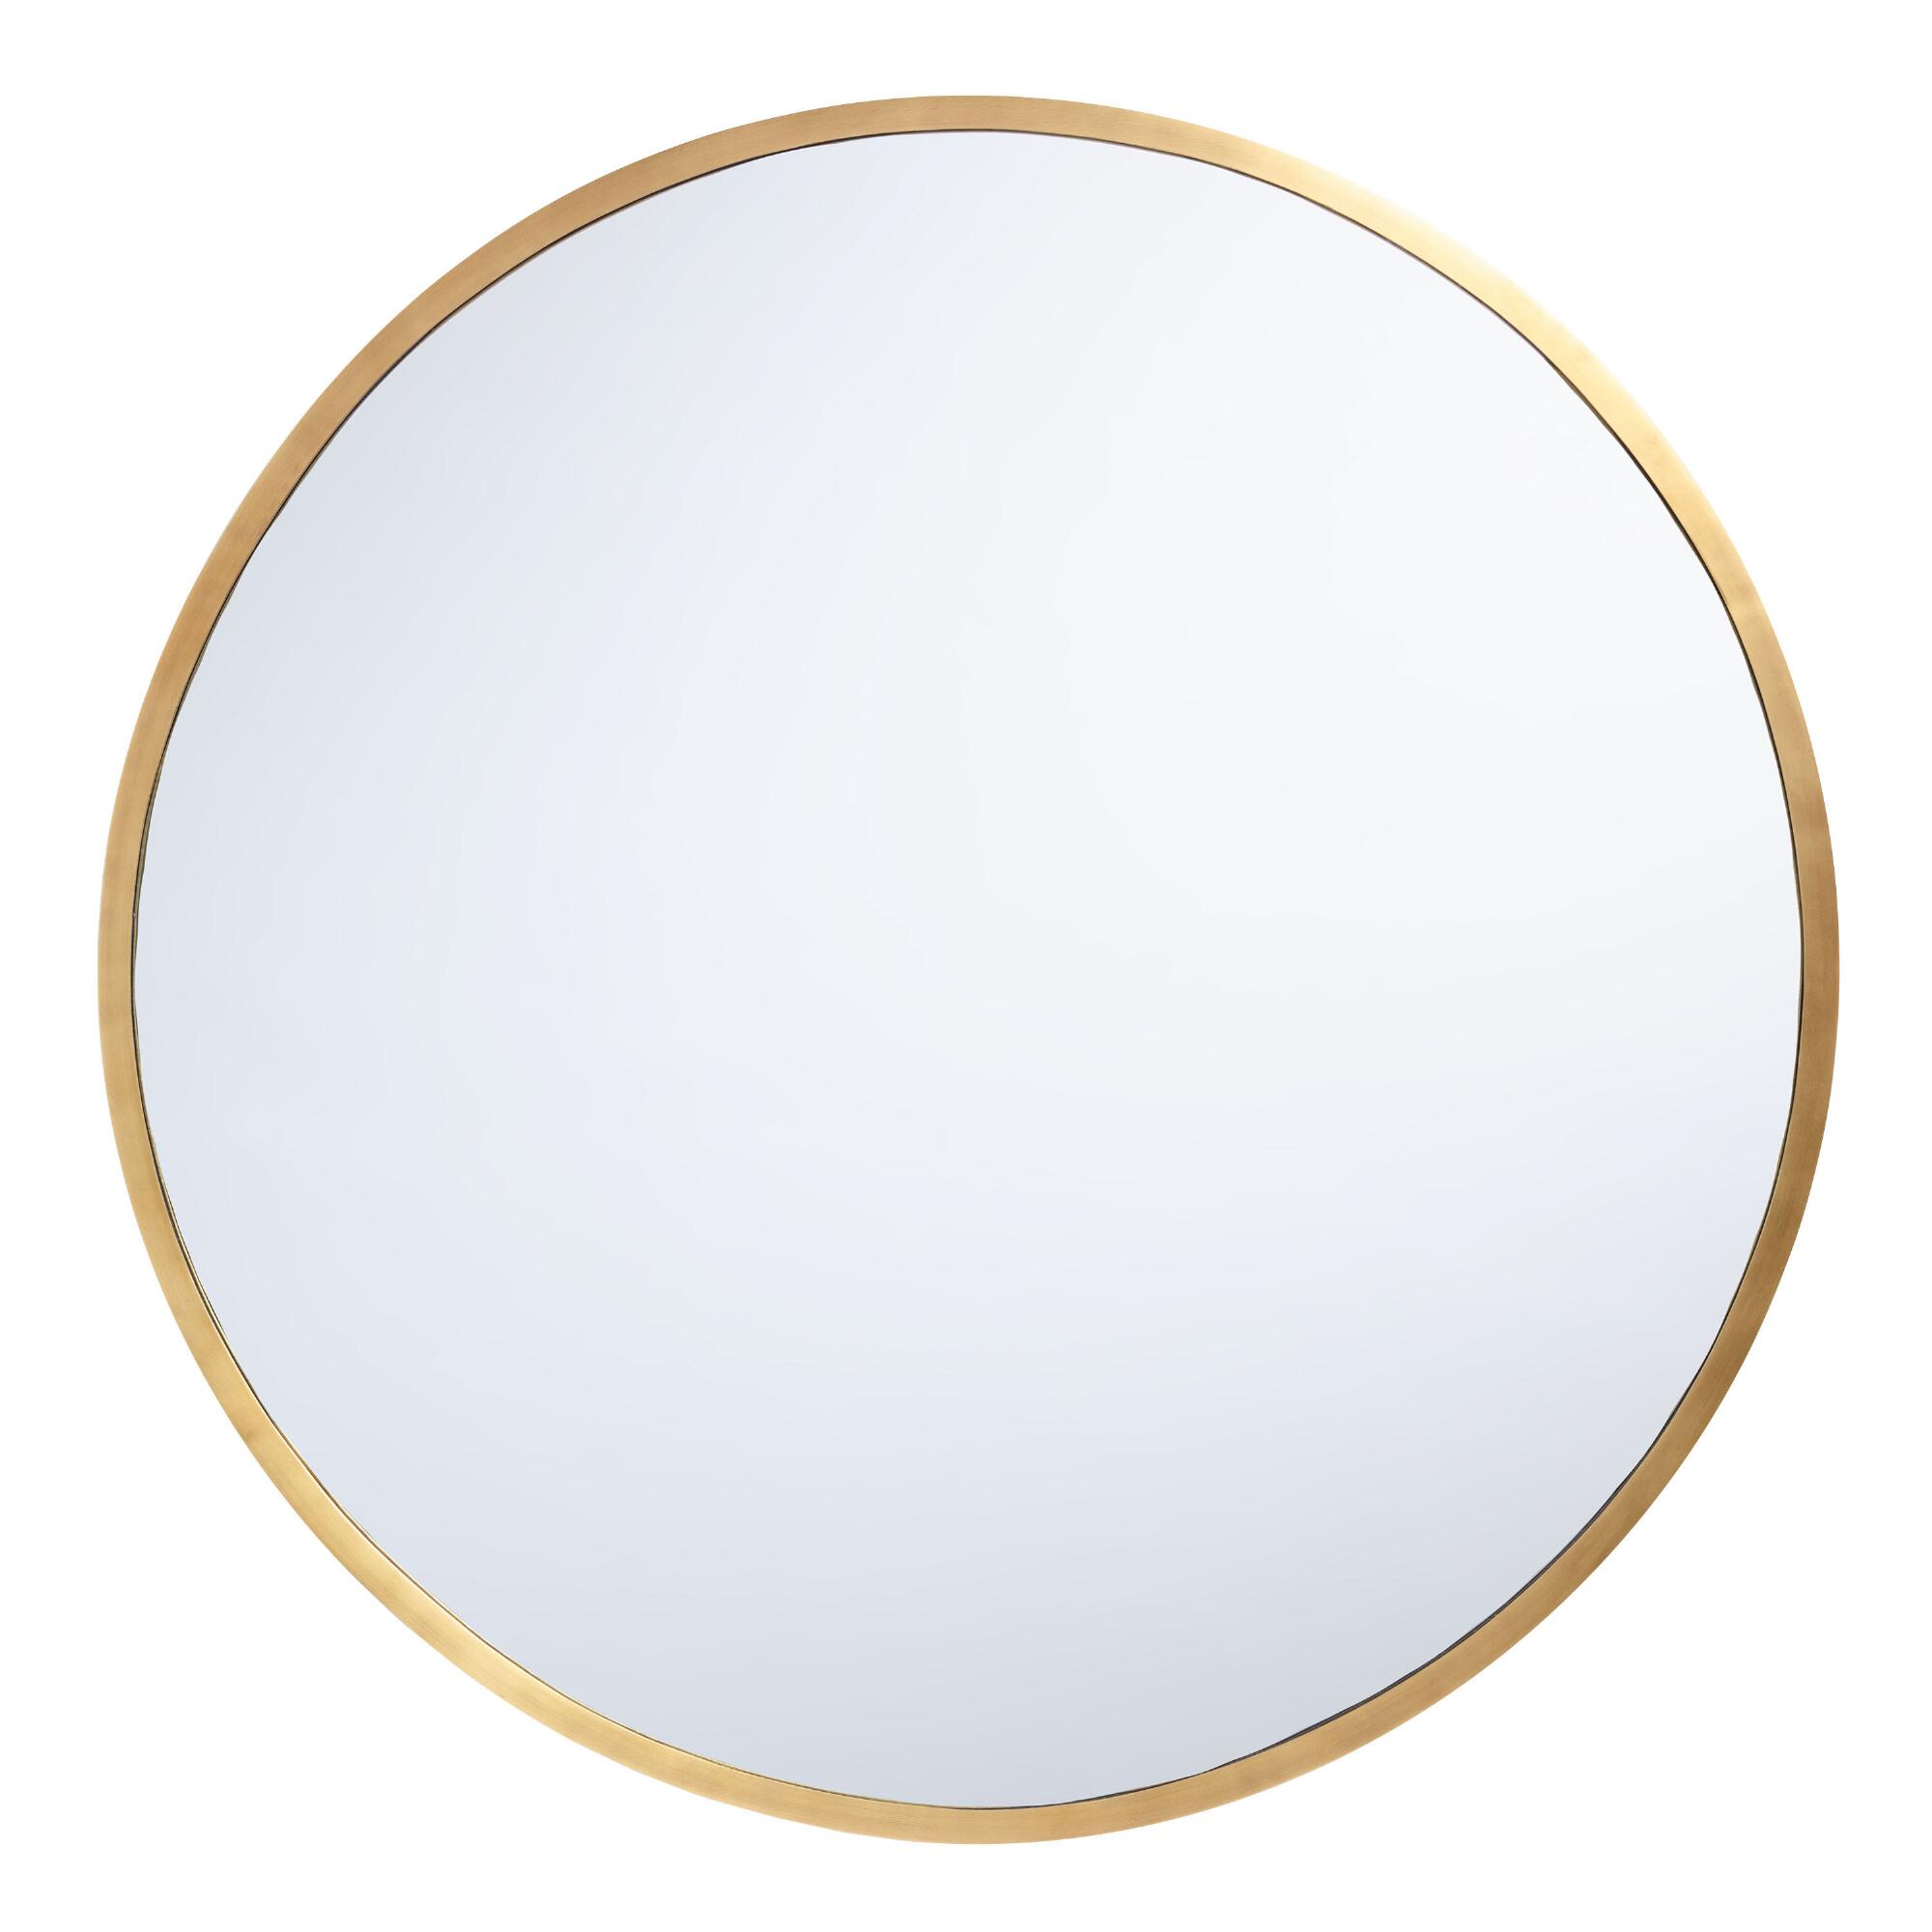 Round Metal Sana Mirror by World Market